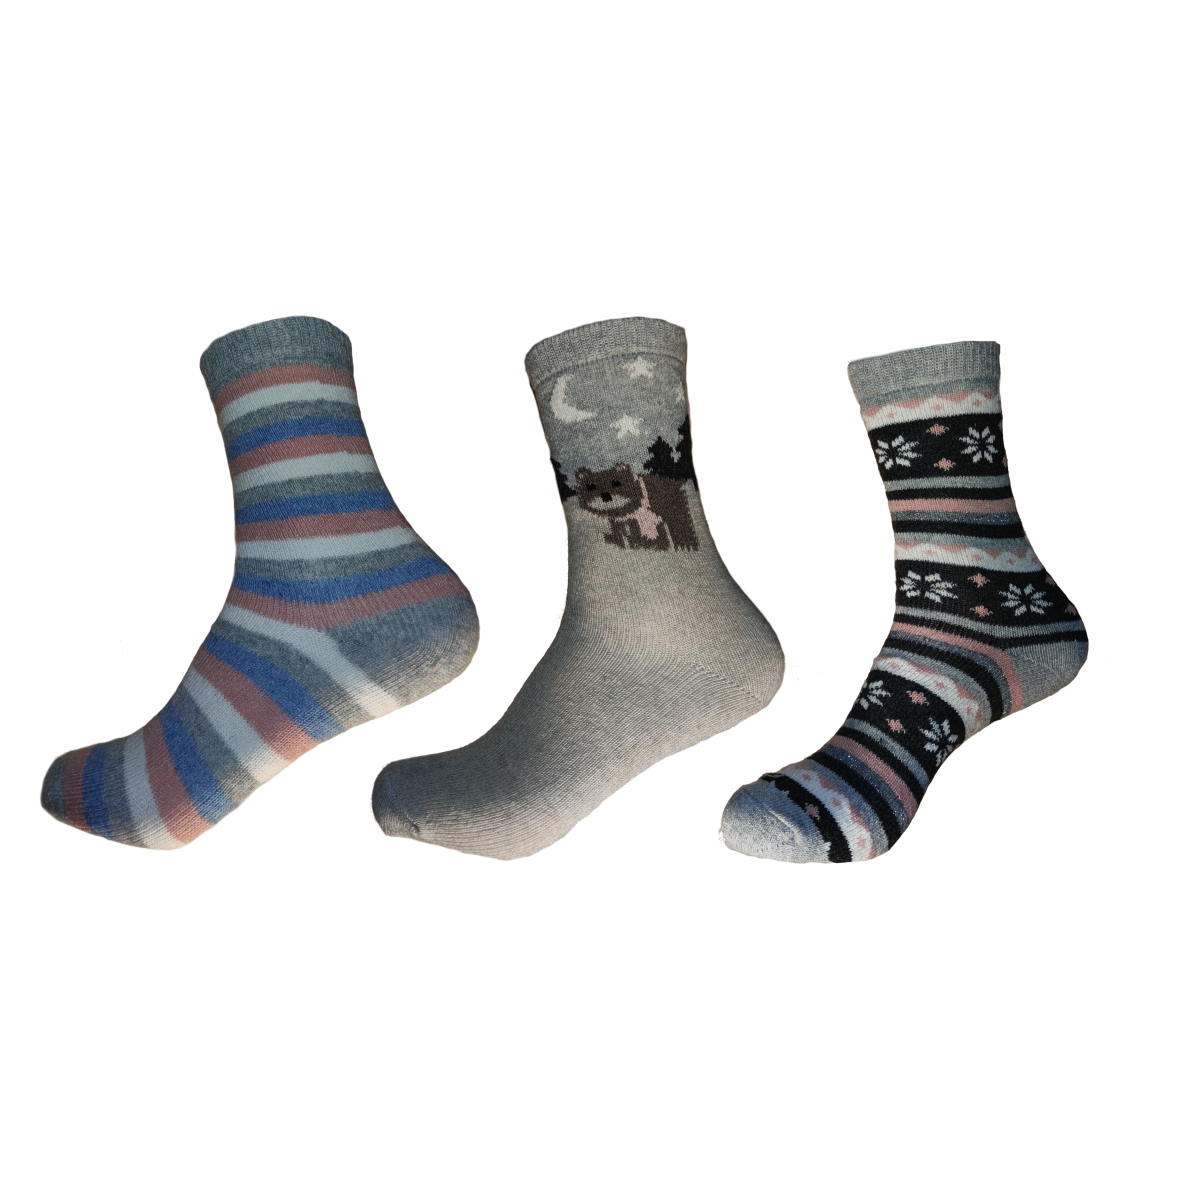 Ladies Thermal Socks with Wool - 3 Pairs - SpicyJam™